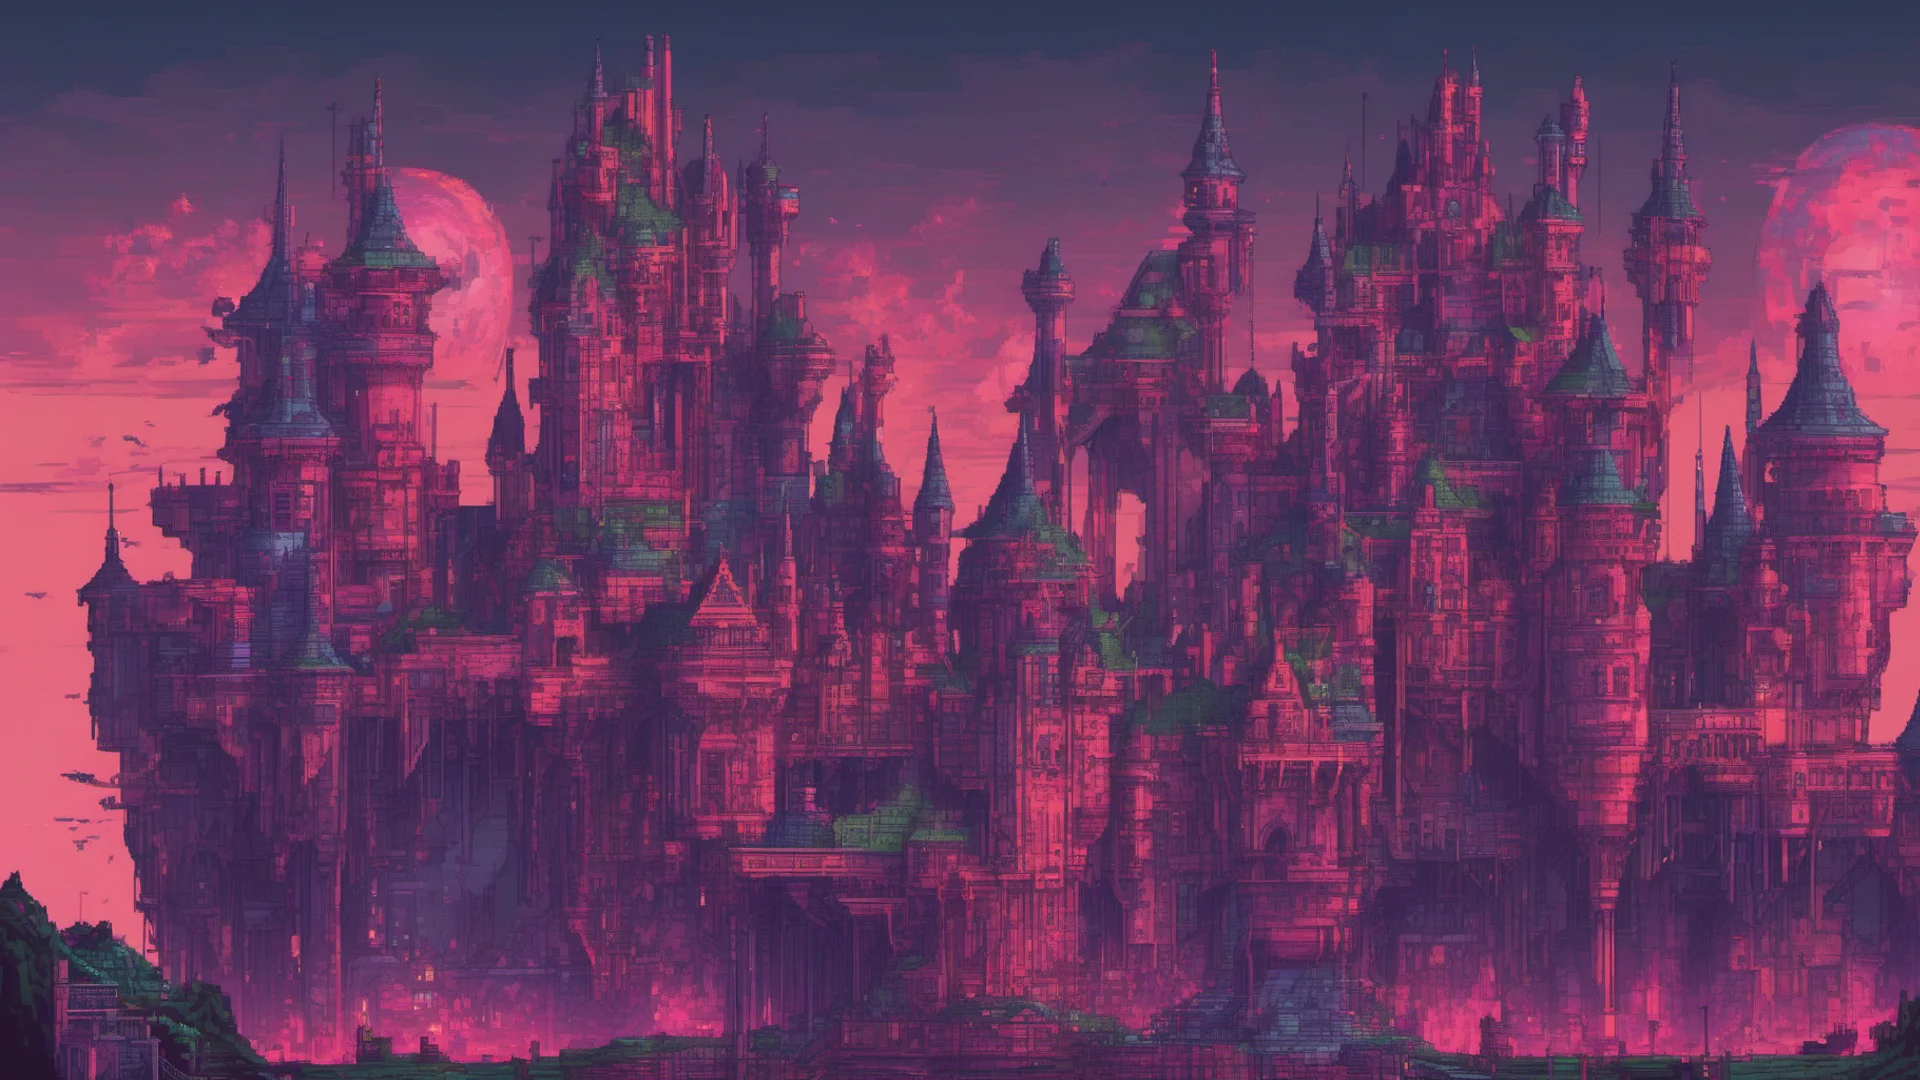 pixelart cyberpunk fantasy castle amazing awesome portrait 2 wide